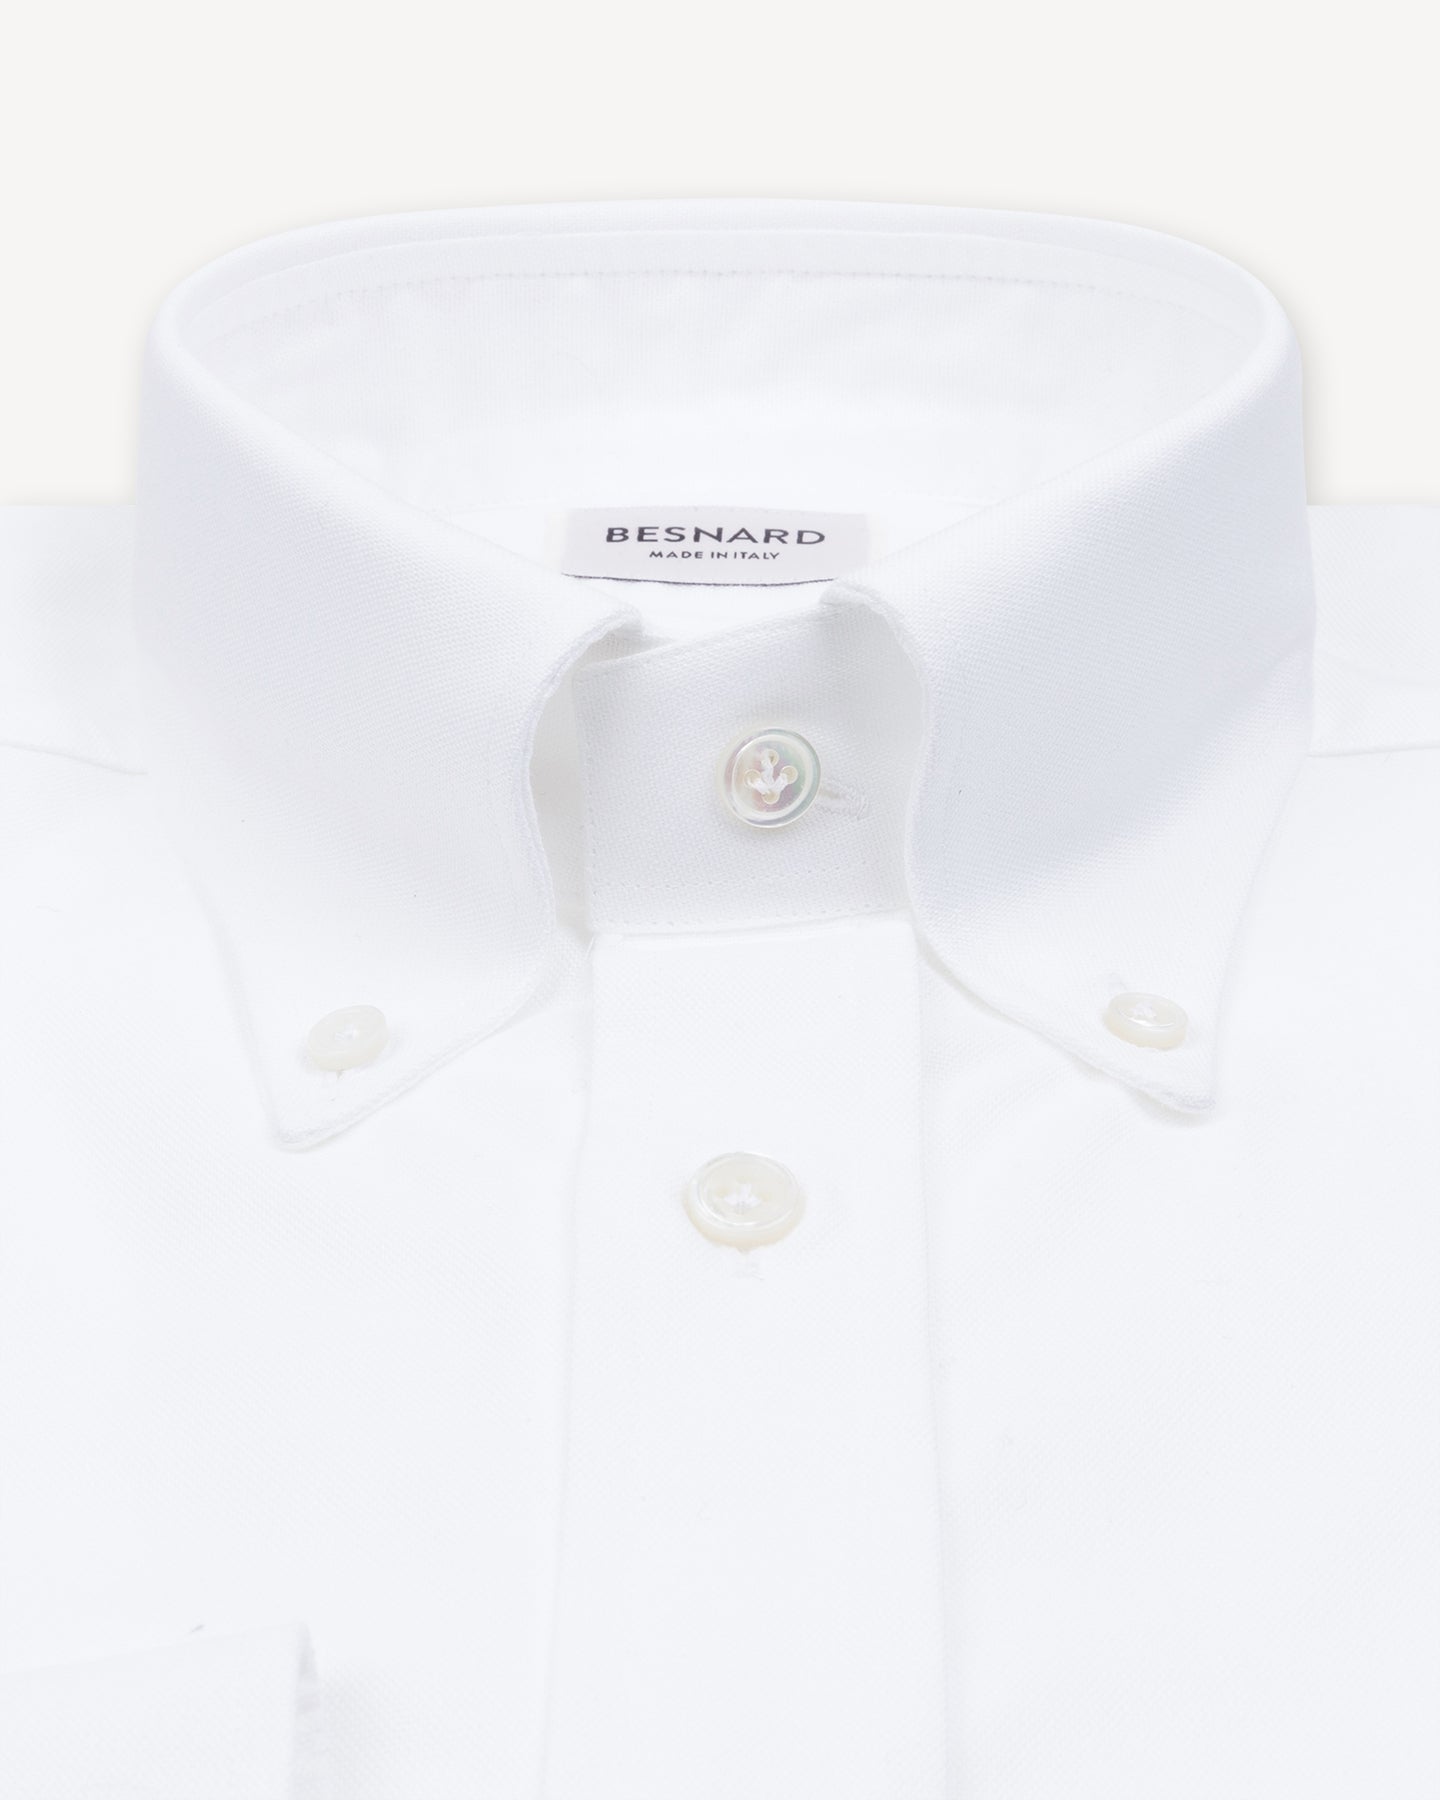 White Oxford Cloth Button Down Shirt